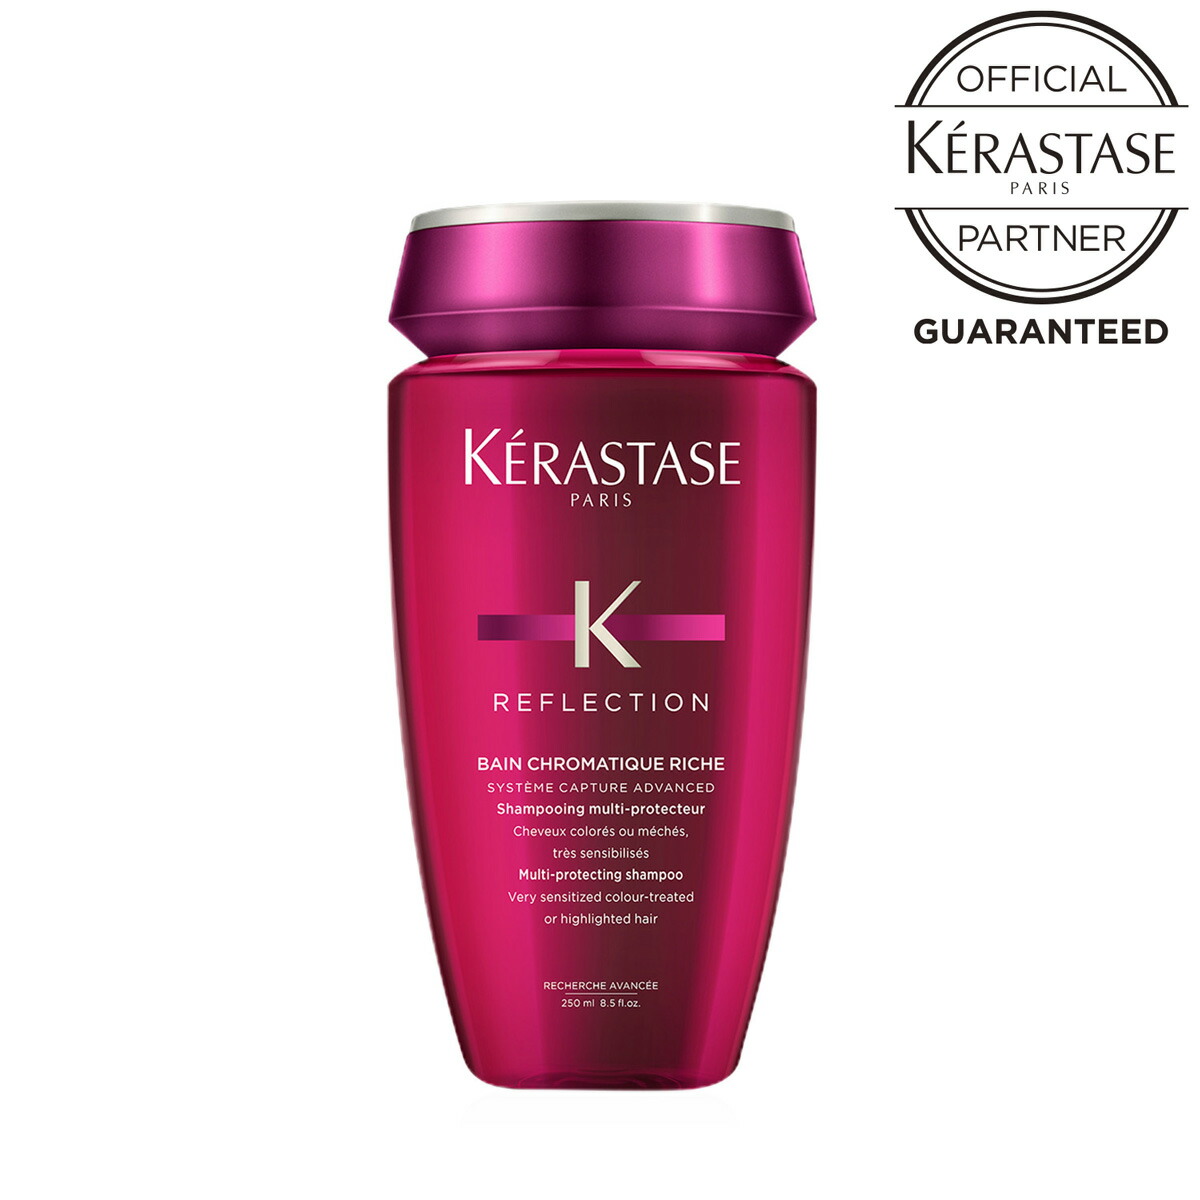 《2020年10月 月間優良ショップ受賞》 本日限定 《正規販売店》KERASTASE ケラスターゼ RF 250ml輝きが変わるヘアカラーヘア用シャンプー バーゲンセール クロマティック リッシュ バン